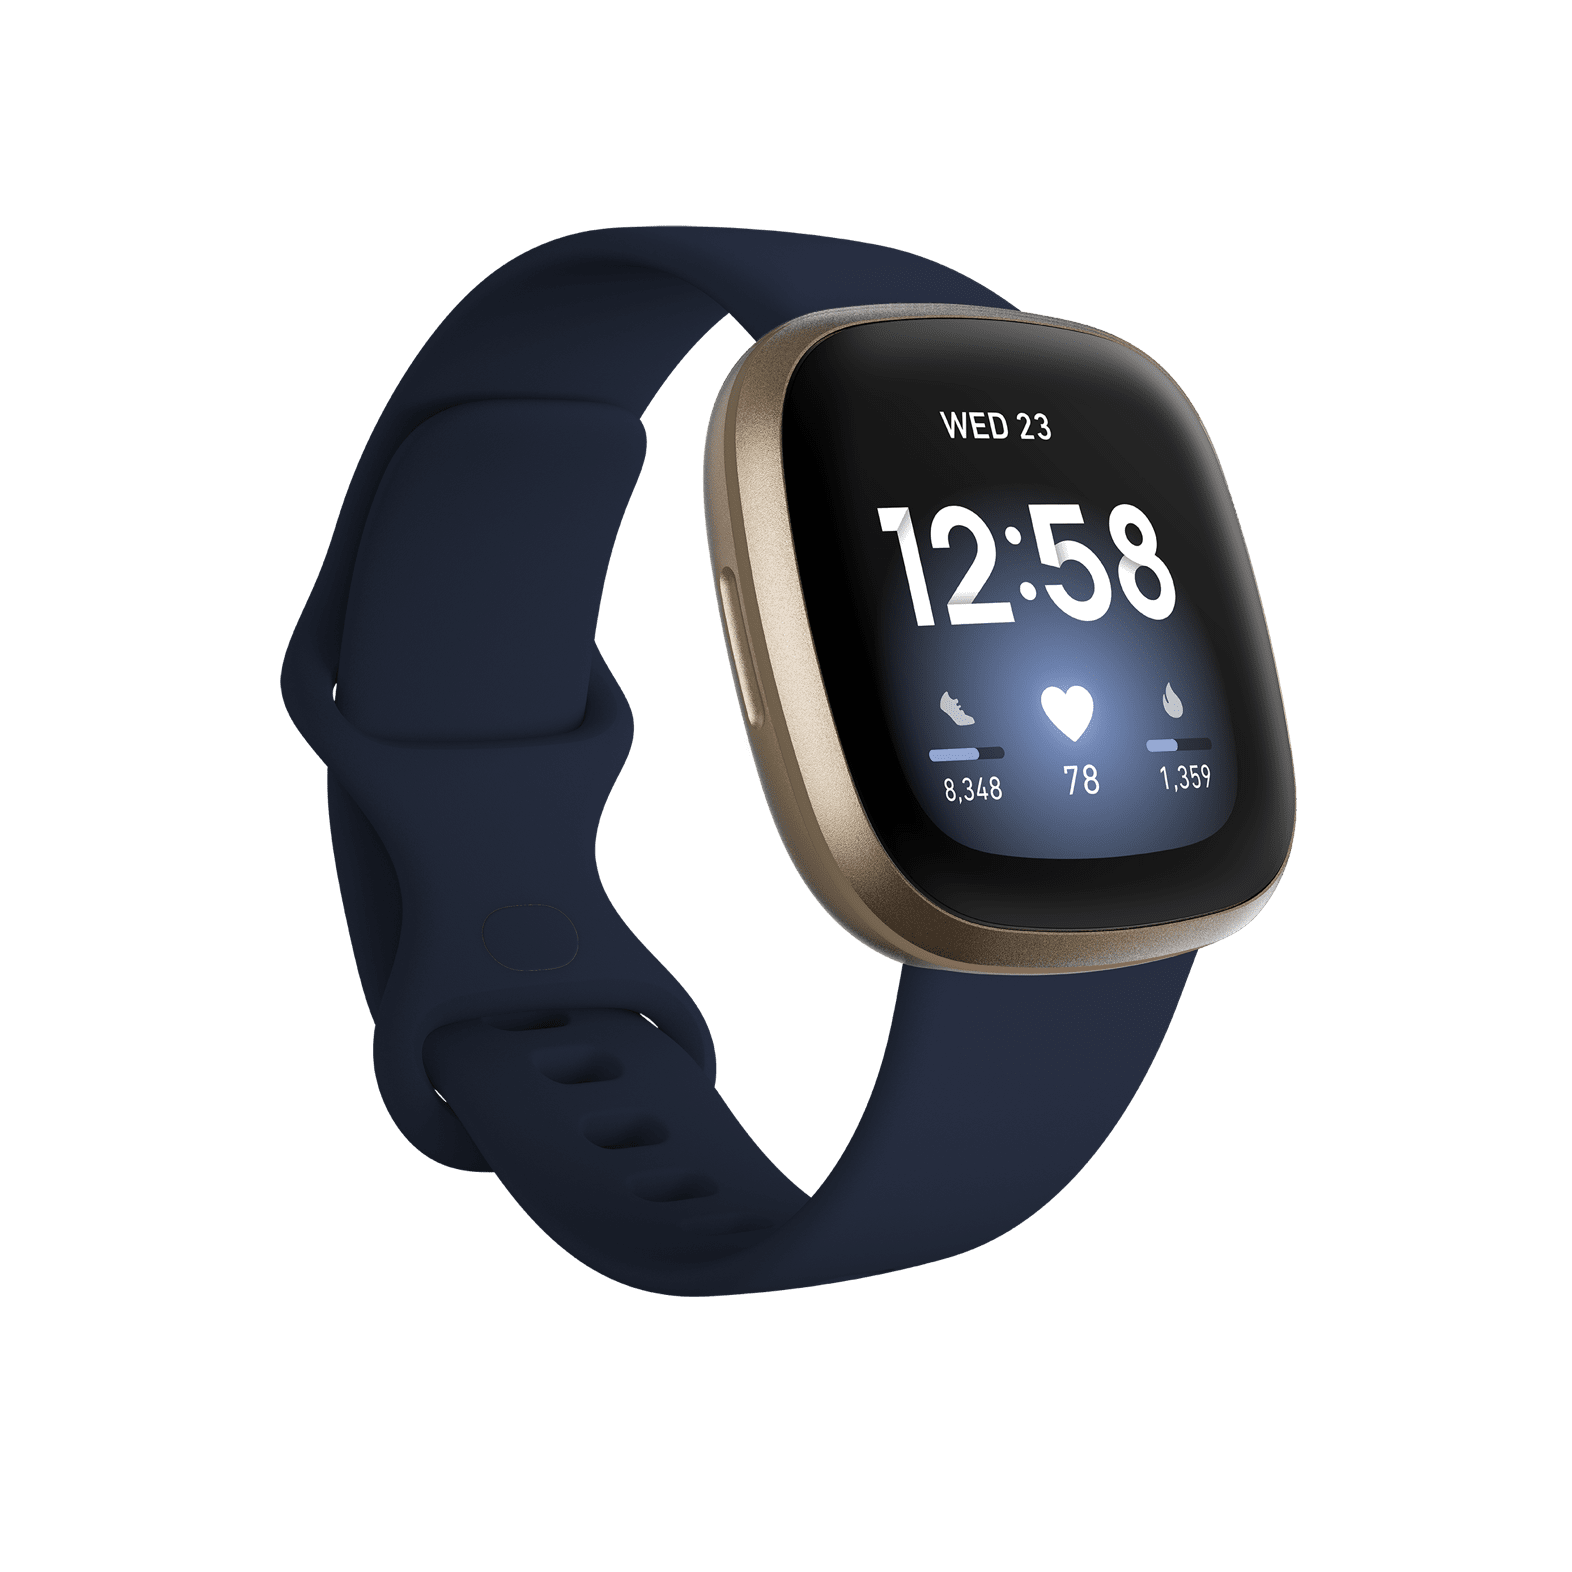 Should I sleep with my smartwatch?